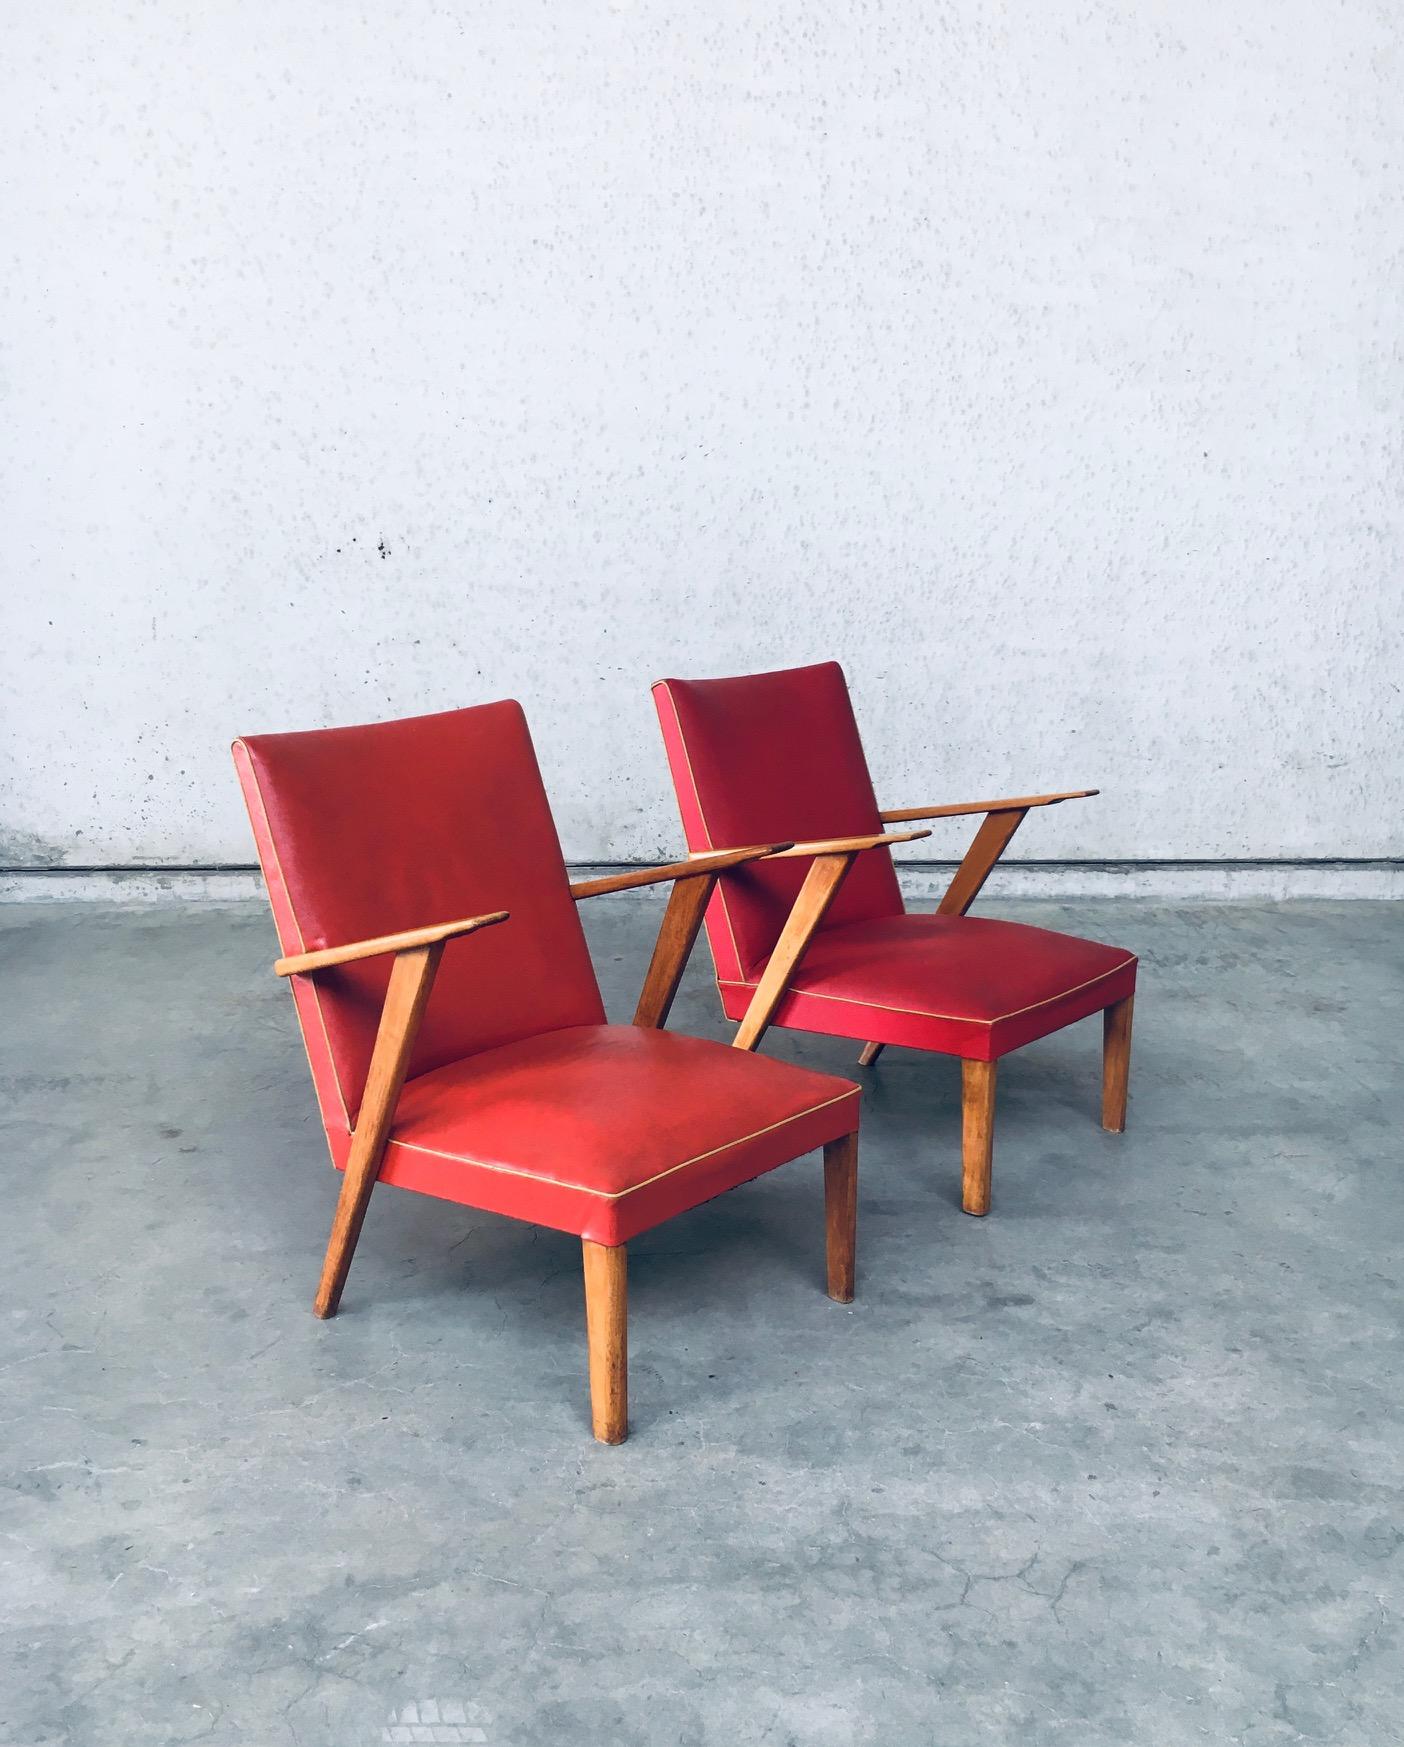 Ensemble de chaises longues Vintage Midcentury Modern Design/One. Fabriqué aux Pays-Bas, dans les années 1950. Faux cuir, deux couleurs différentes, skaï rouge avec accoudoirs et pieds en hêtre. Les fauteuils sont similaires, mais diffèrent